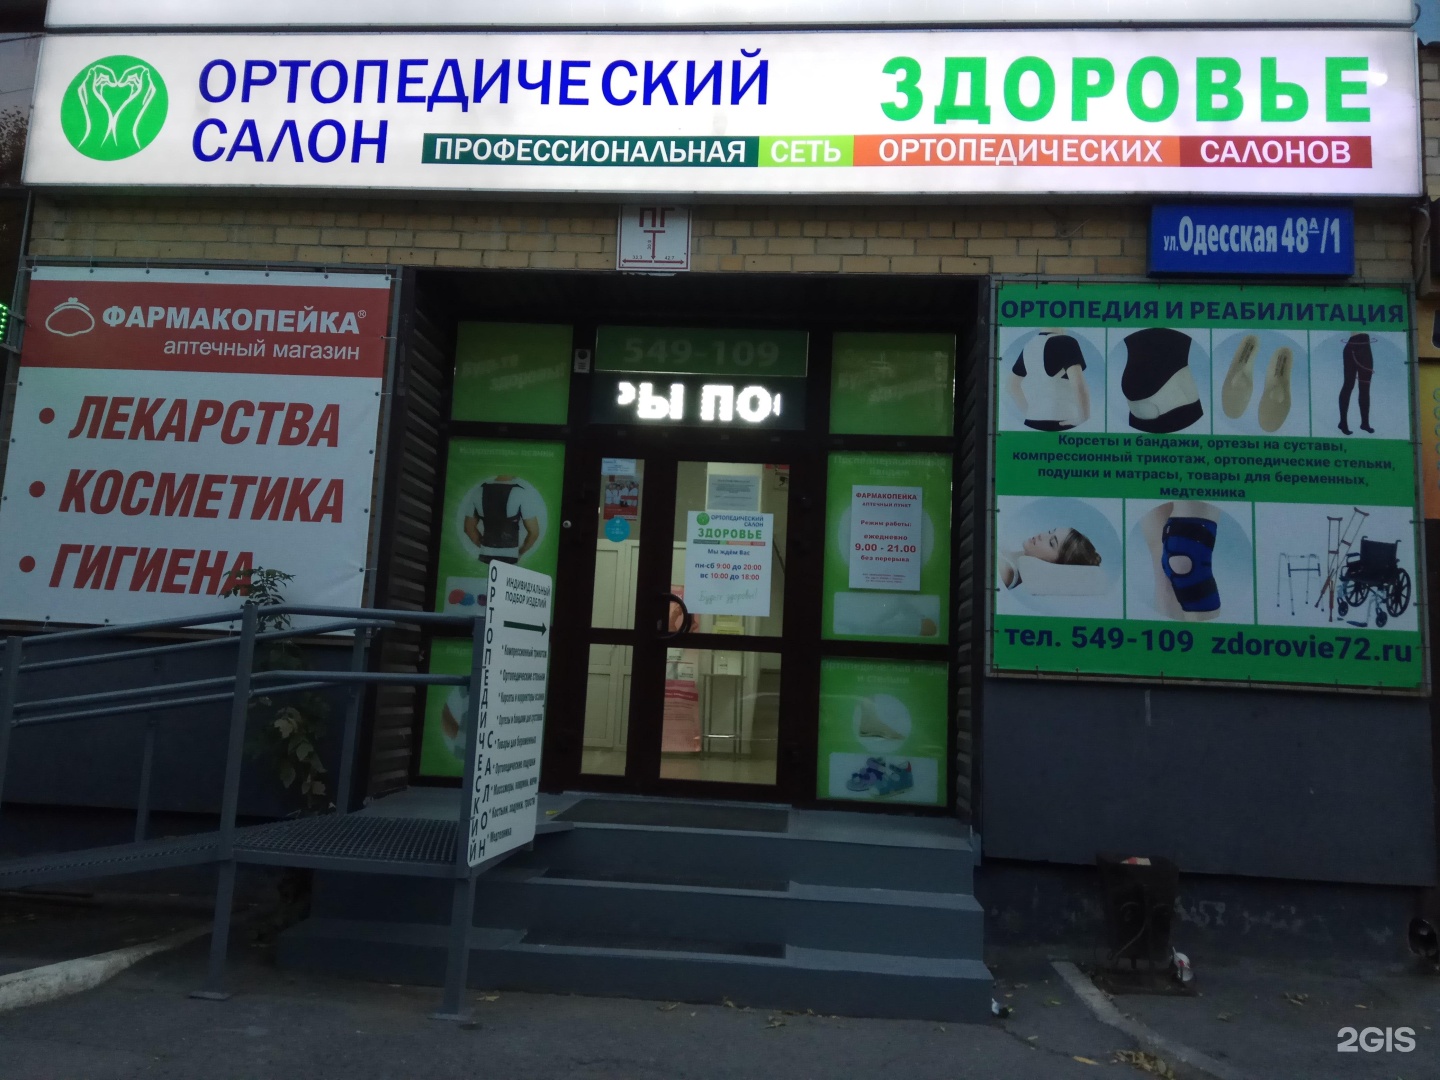 Ортопедический салон Тюмень. Здоровье Тюмень. Тюмень Одесская 48а здоровье. Академия здоровья ортопедический салон.